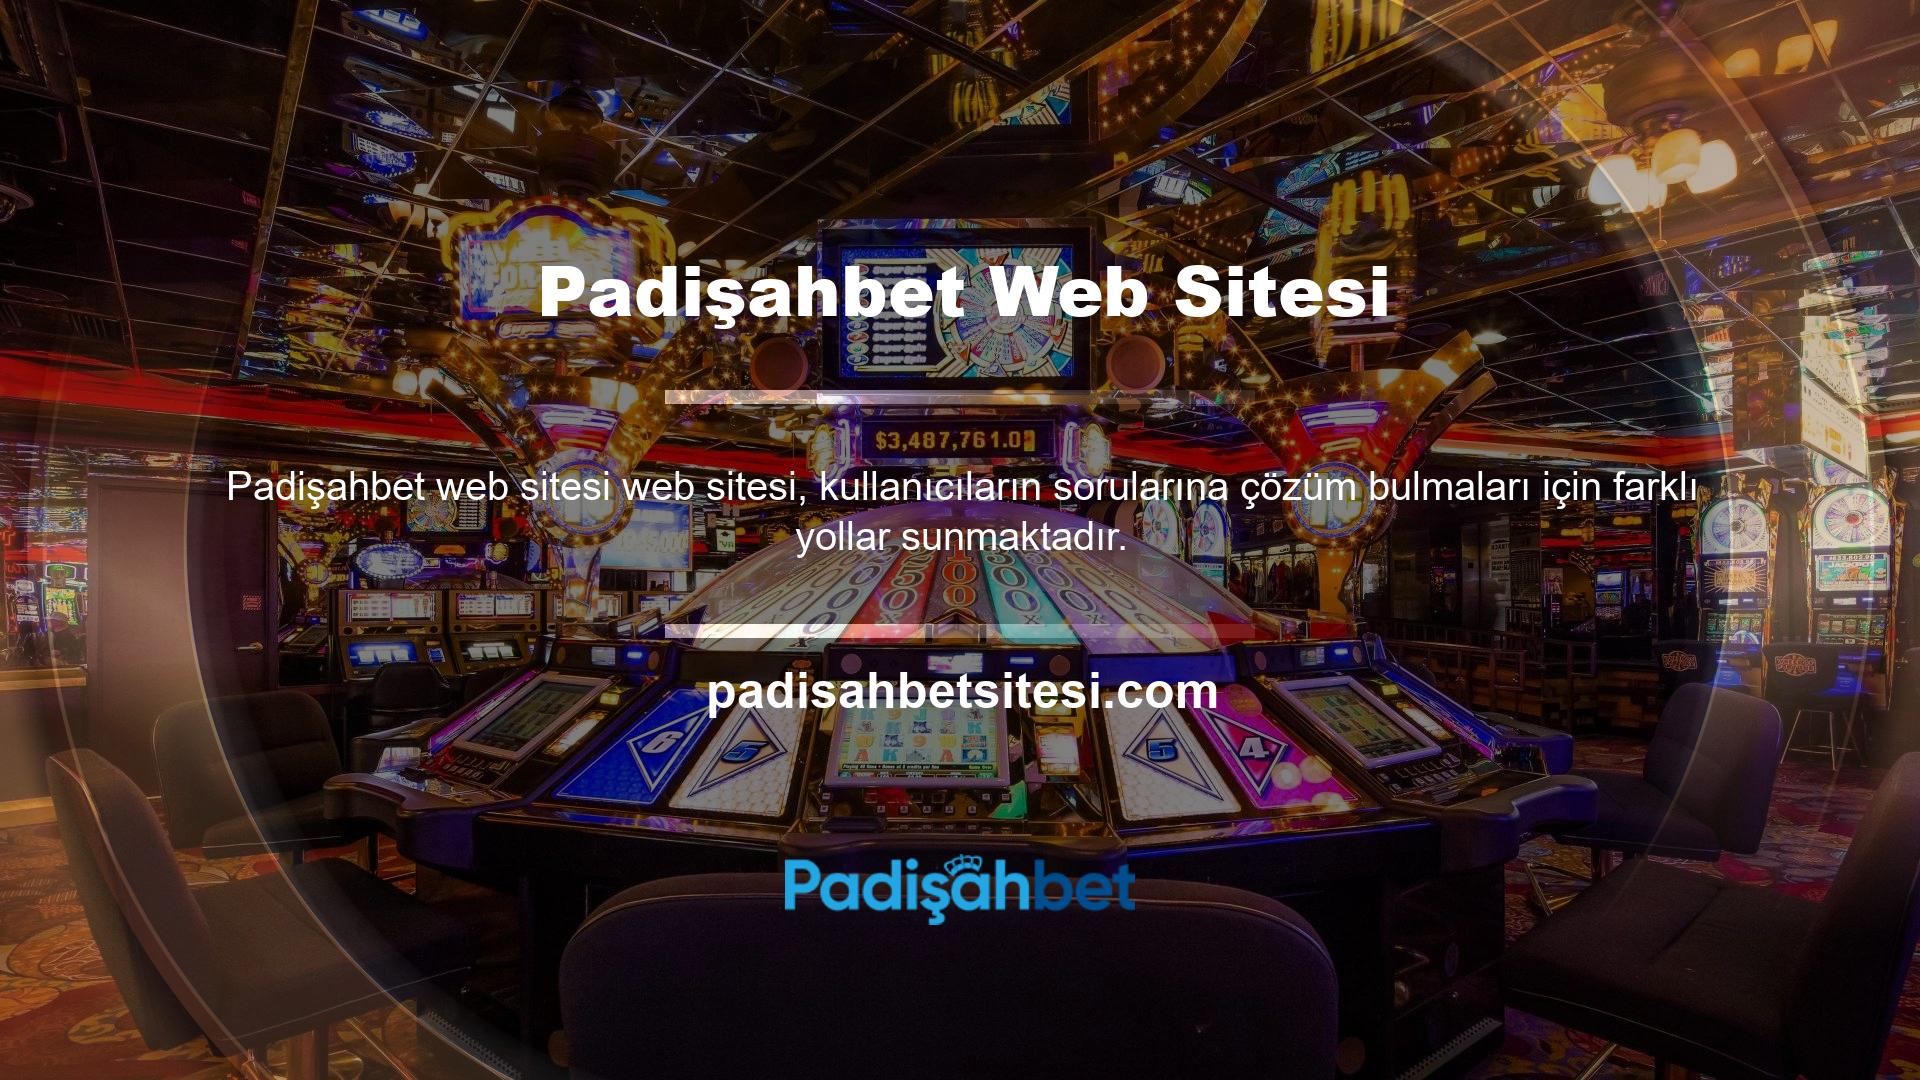 Padişahbet köklü bir altyapıya sahip olup casino, sanal spor ve canlı bahis gibi ek alternatifler sunmaktadır